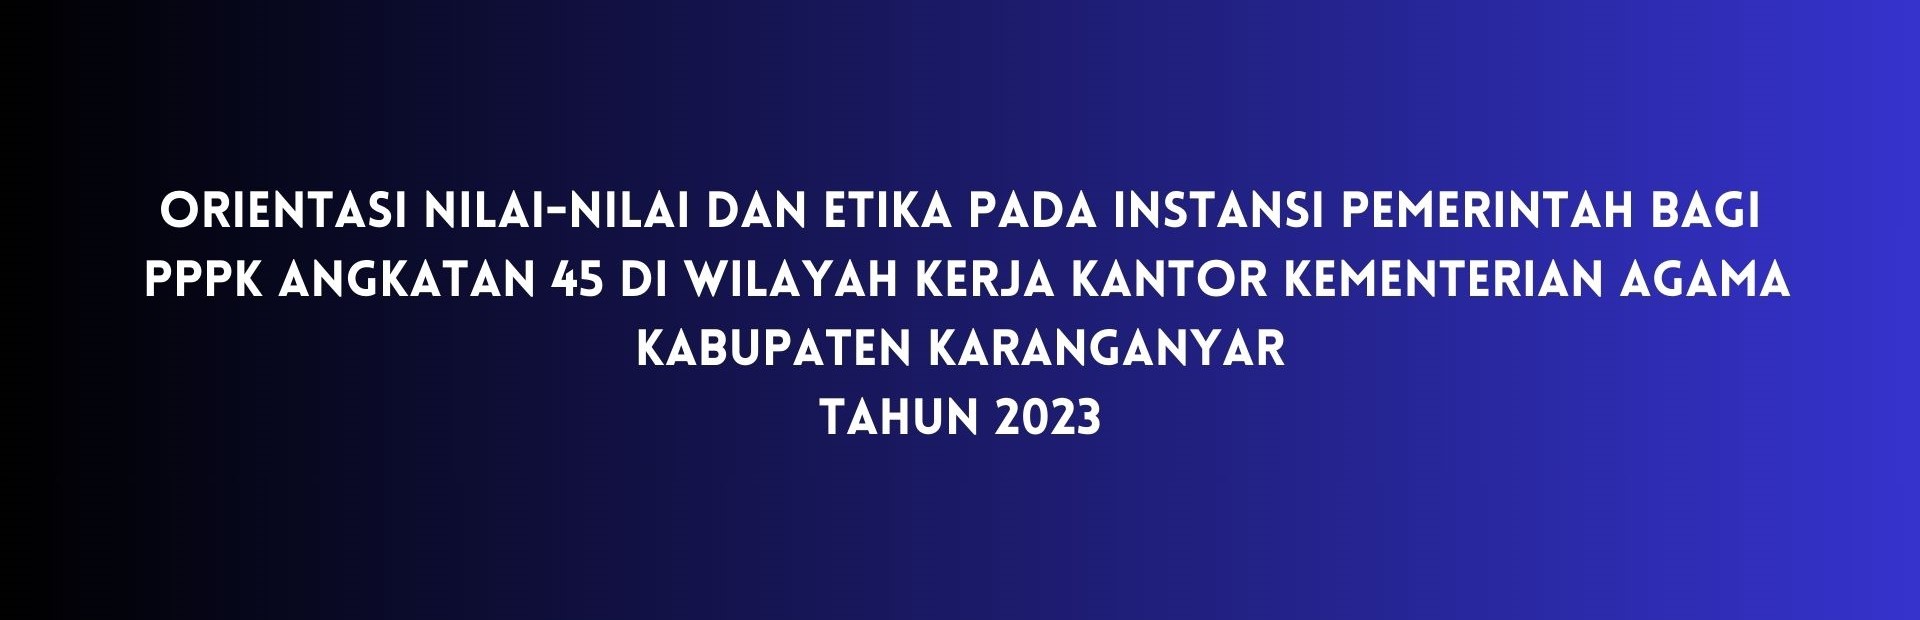 2023 Orientasi Pengenalan Nilai dan Etika pada Instansi Pemerintah Bagi Pegawai Pemerintah dengan Perjanjian Kerja (PPPK) Angkatan XLV (Kab. Karanganyar)